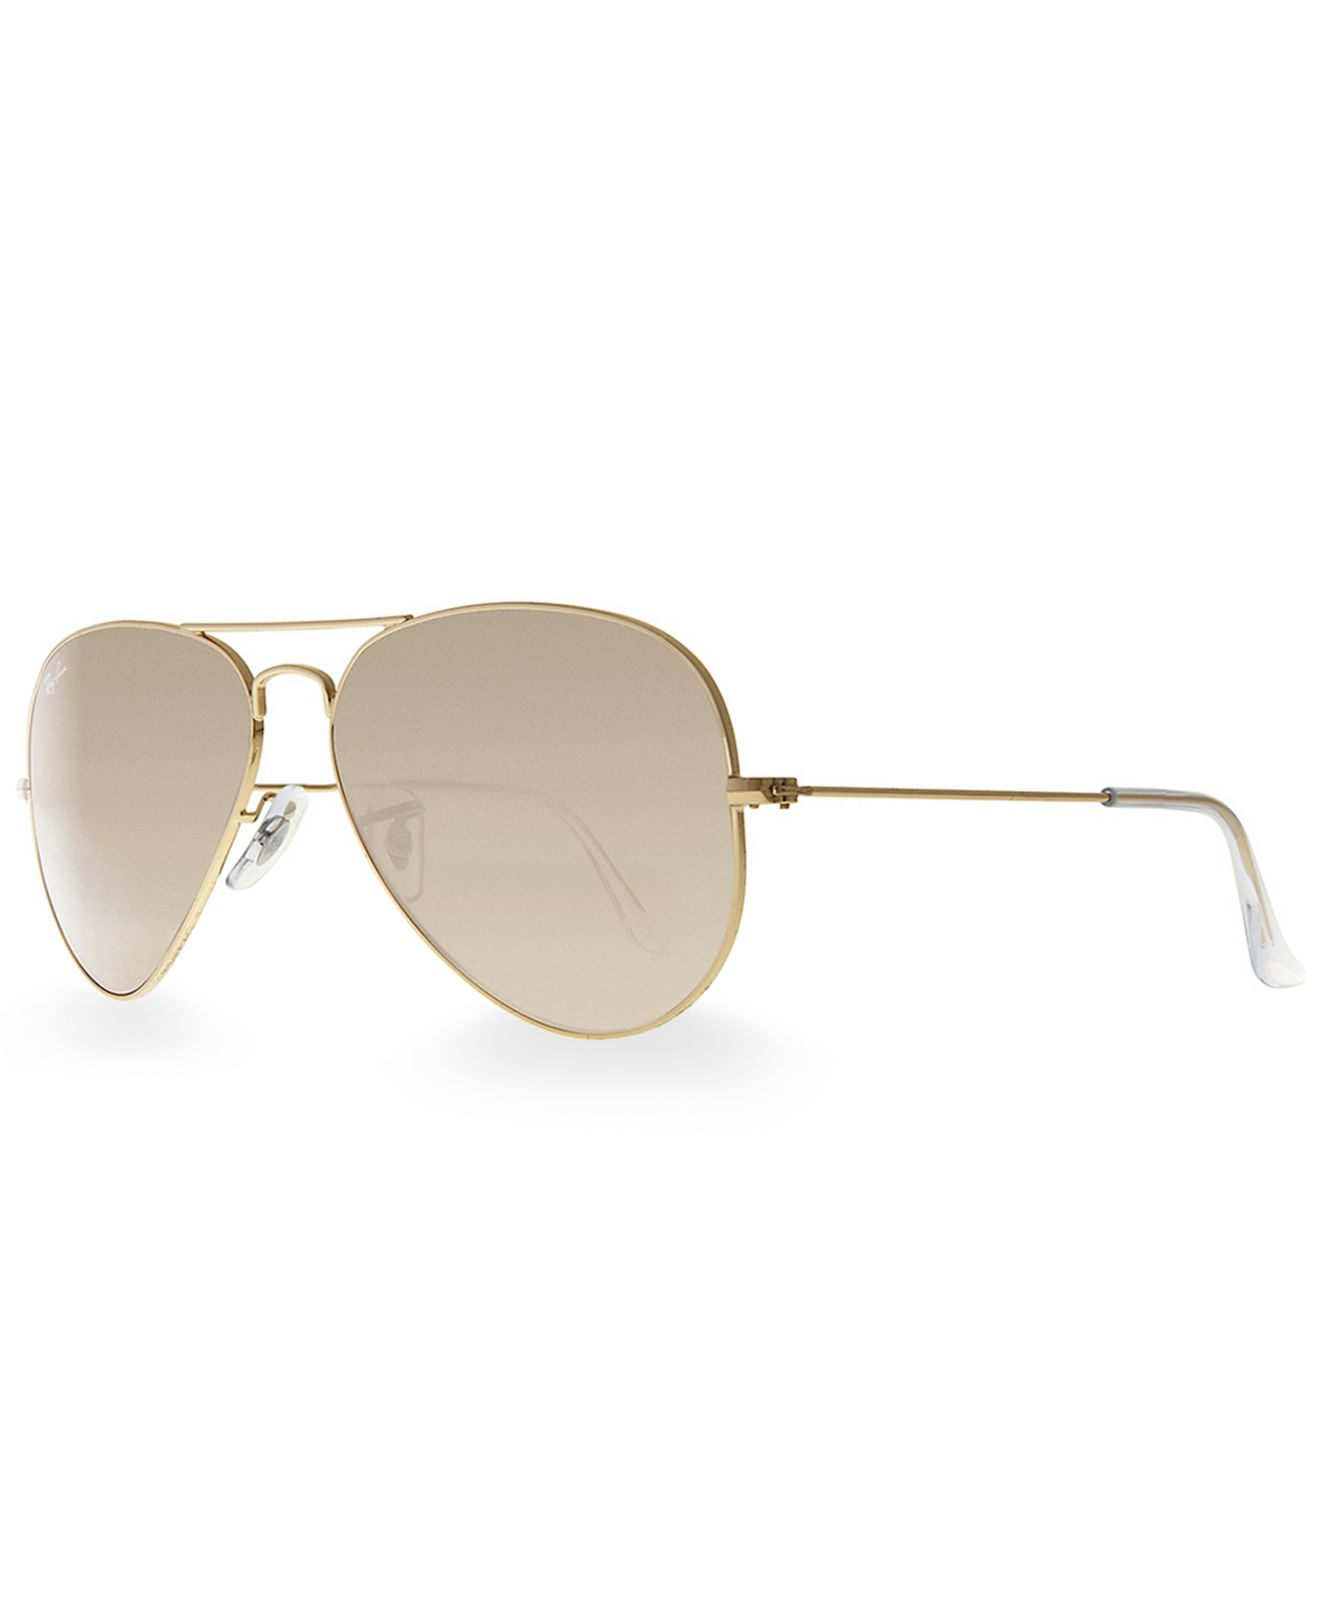 Ray Ban Gold Mirrored Aviator Sunglasses